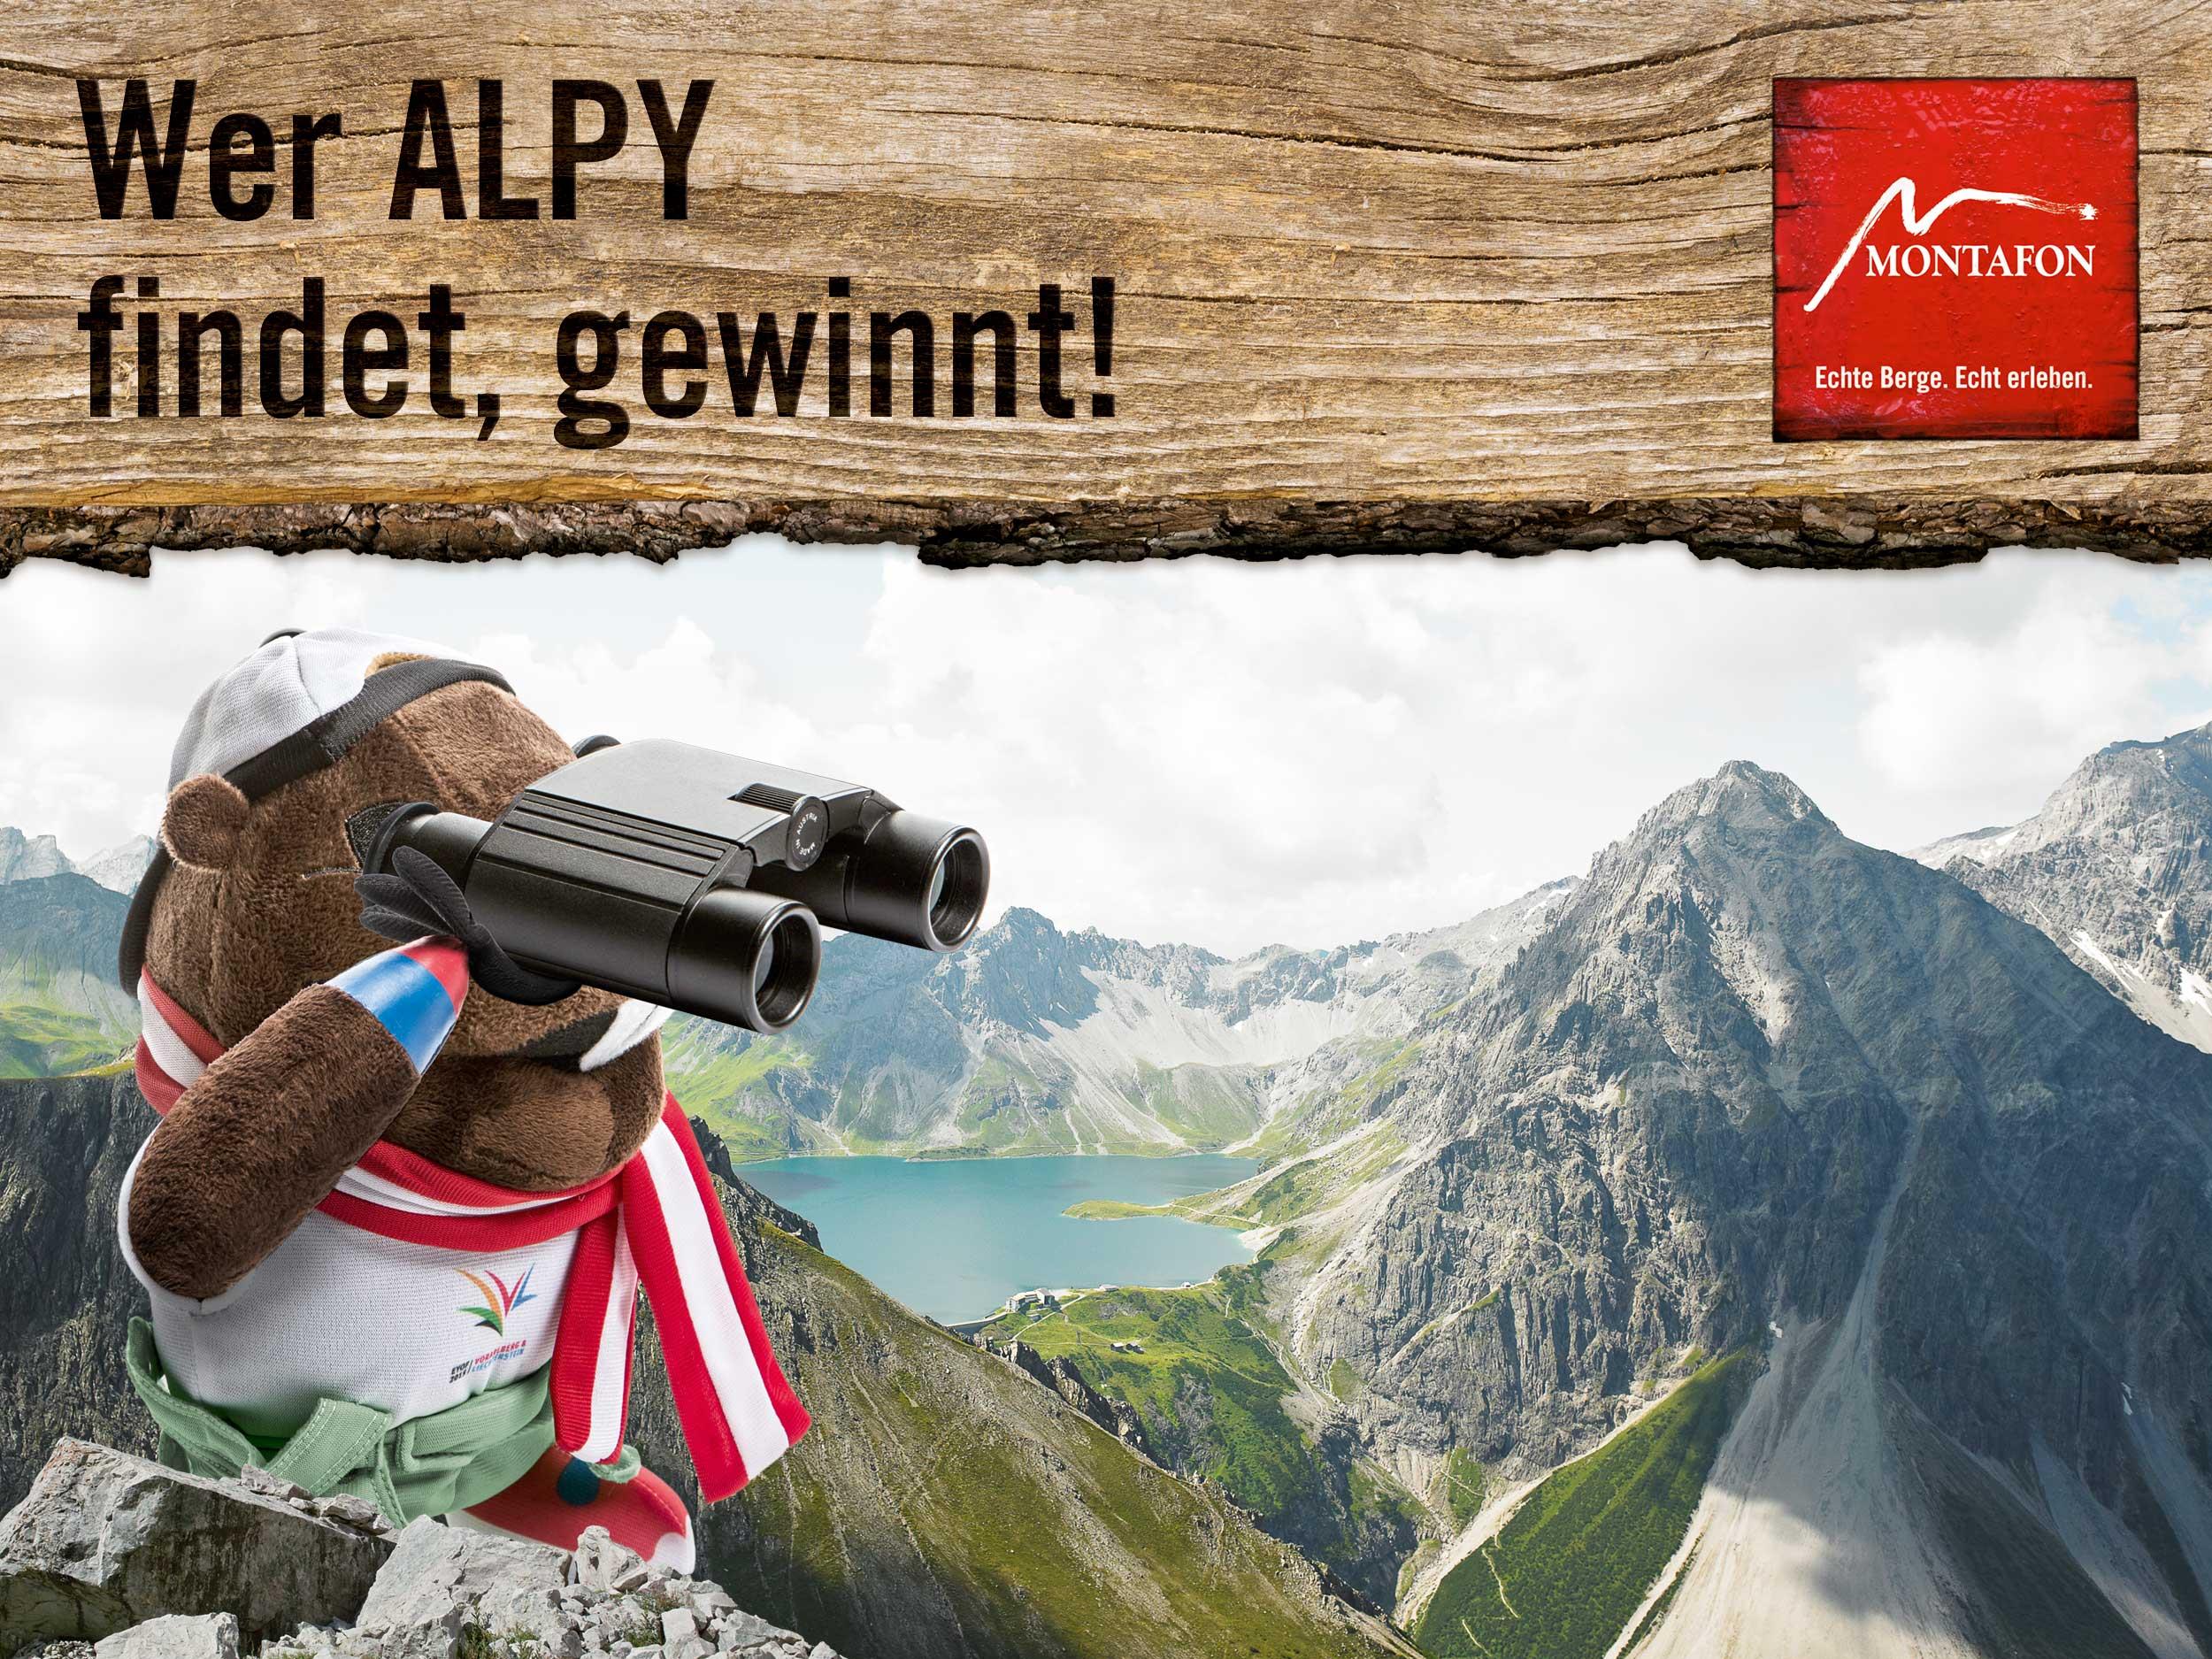 Alpy ist von 1. bis 10. Augustä täglich an einem anderen Ort im Montafon zu finden.